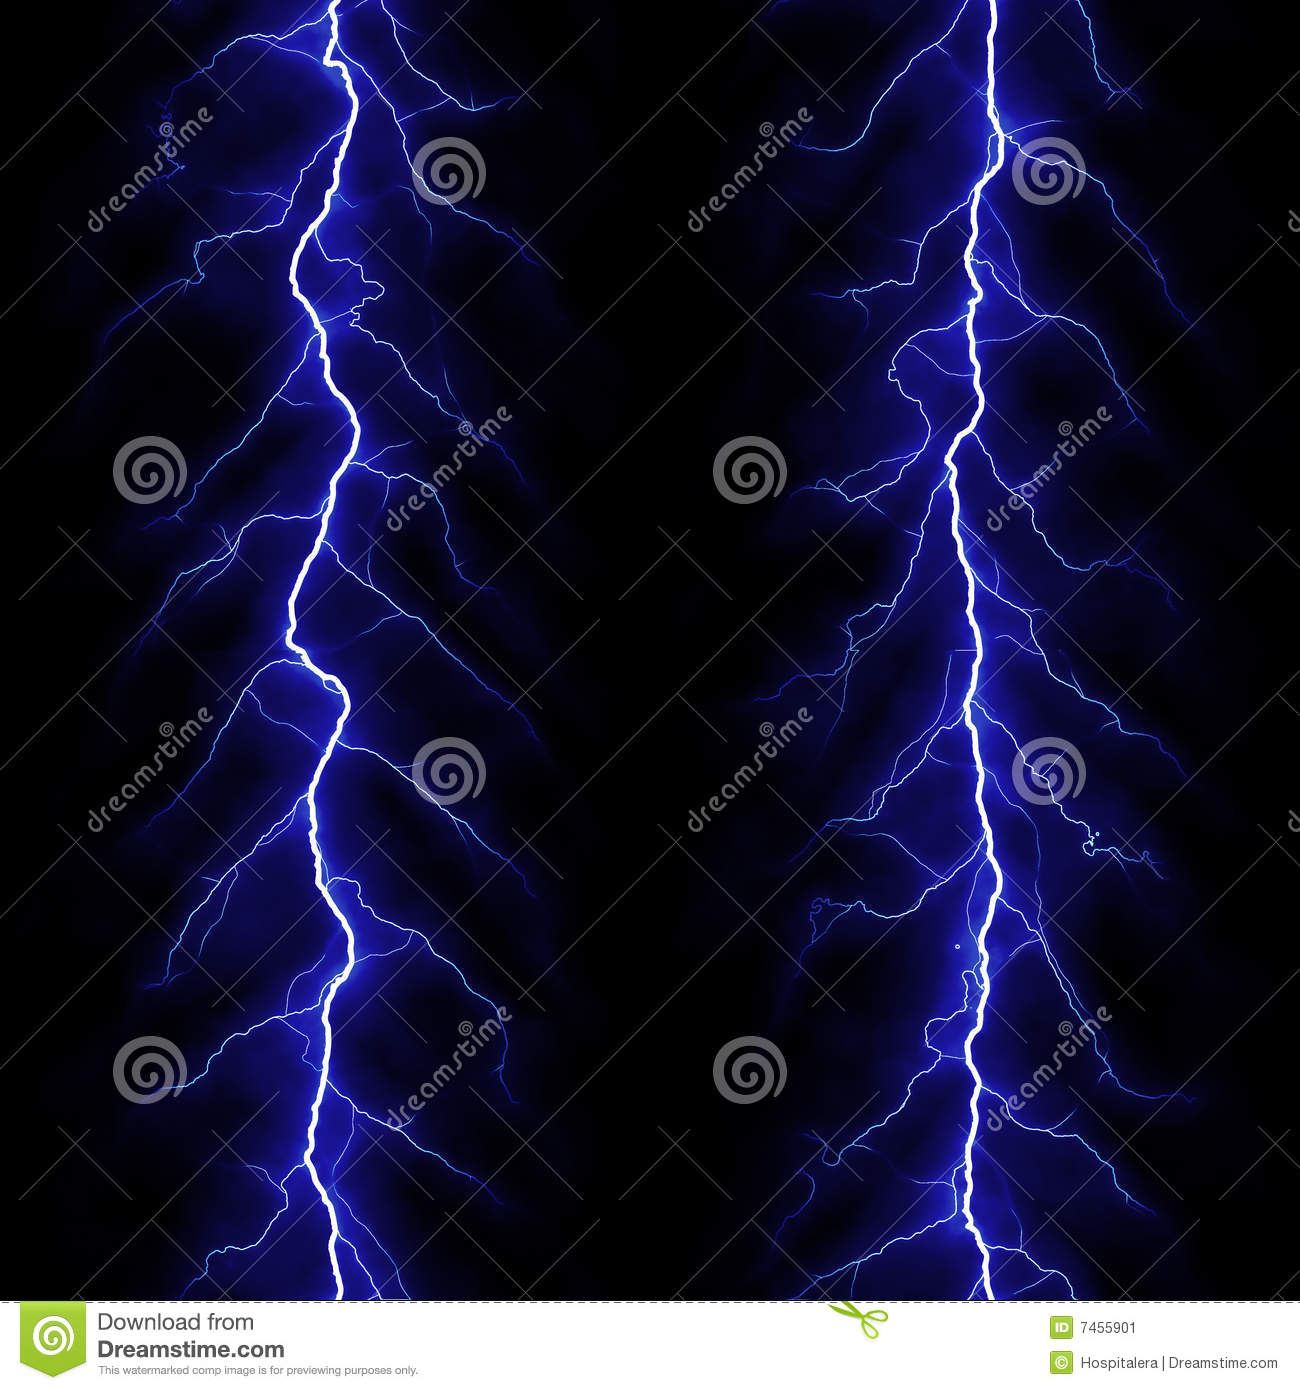 Blue Lightning Stock Image   Image  7455901